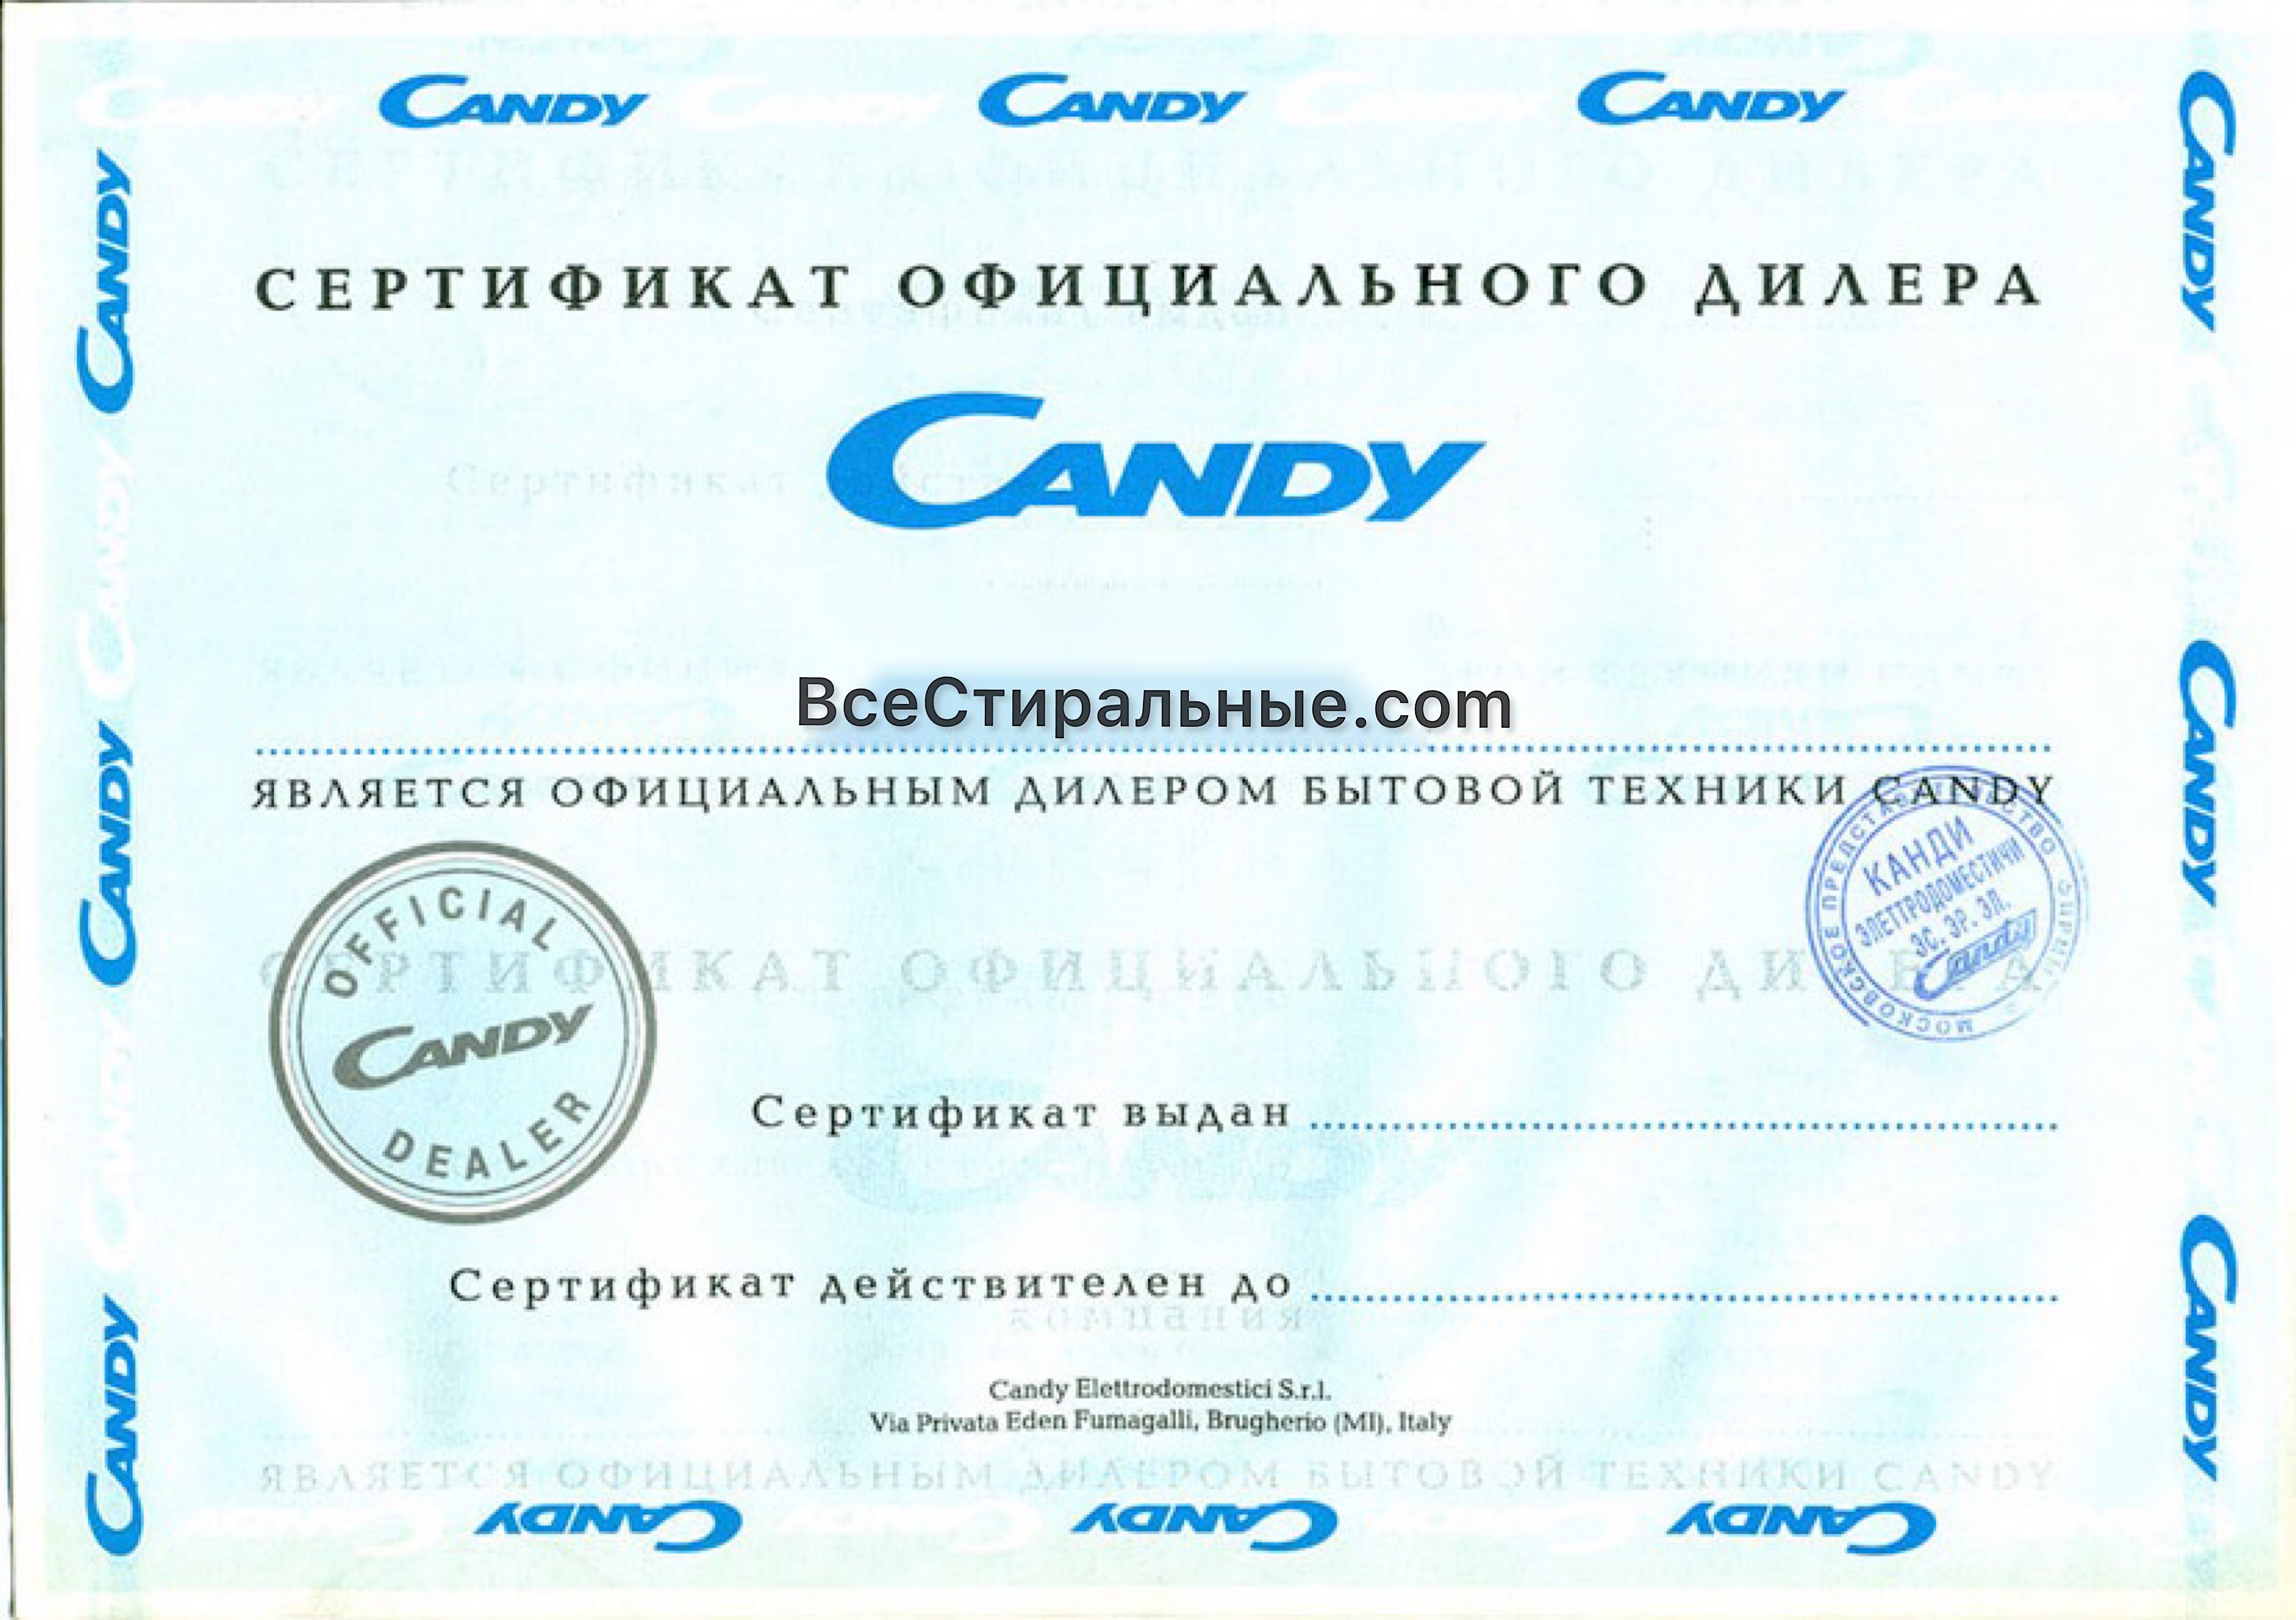 Candy CWB 0713